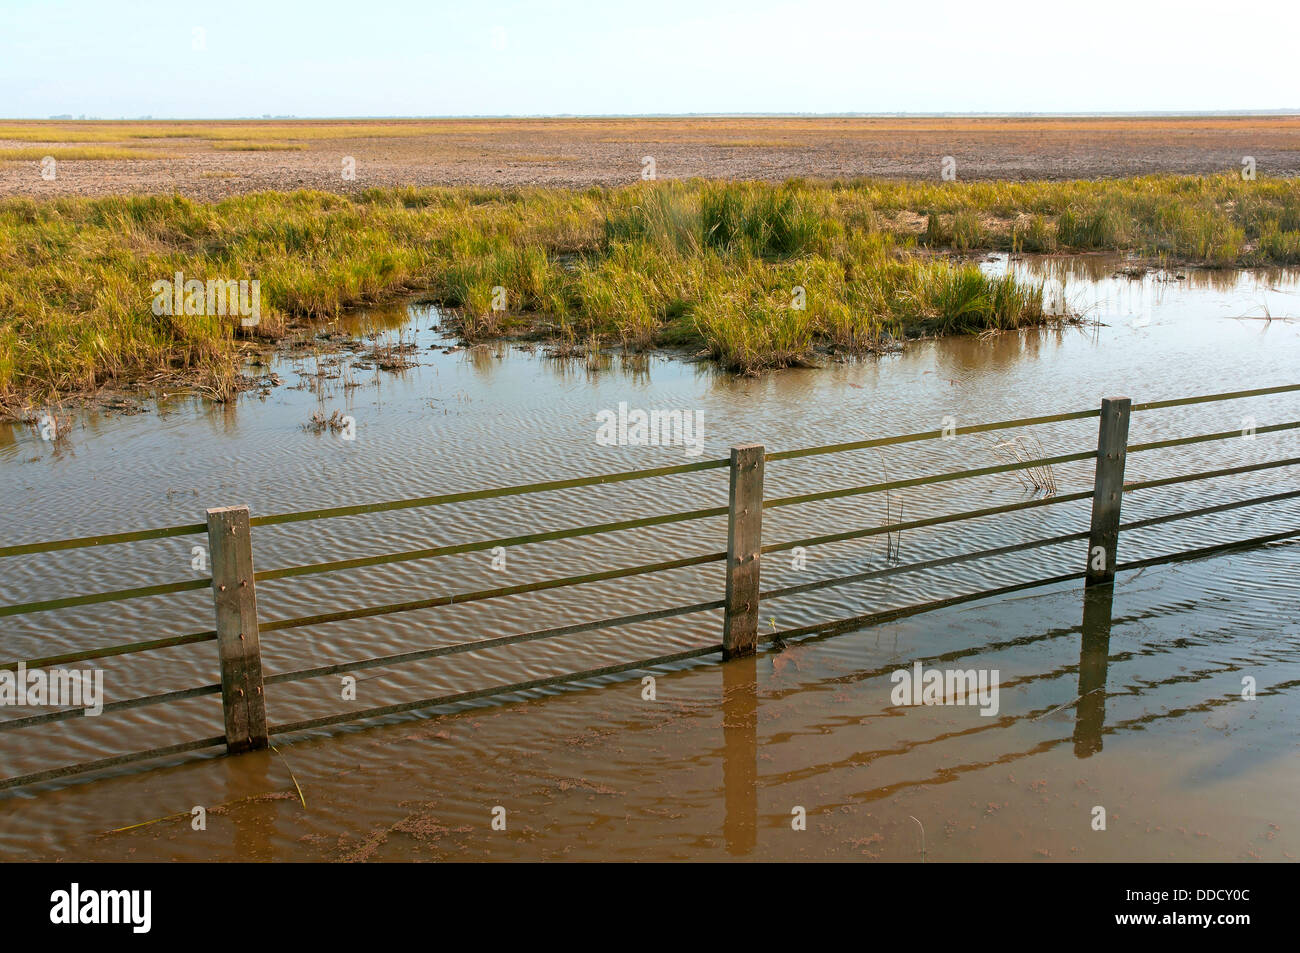 Marshes, Donana National Park, Huelva province, Region of Andalusia, Spain, Europe Stock Photo